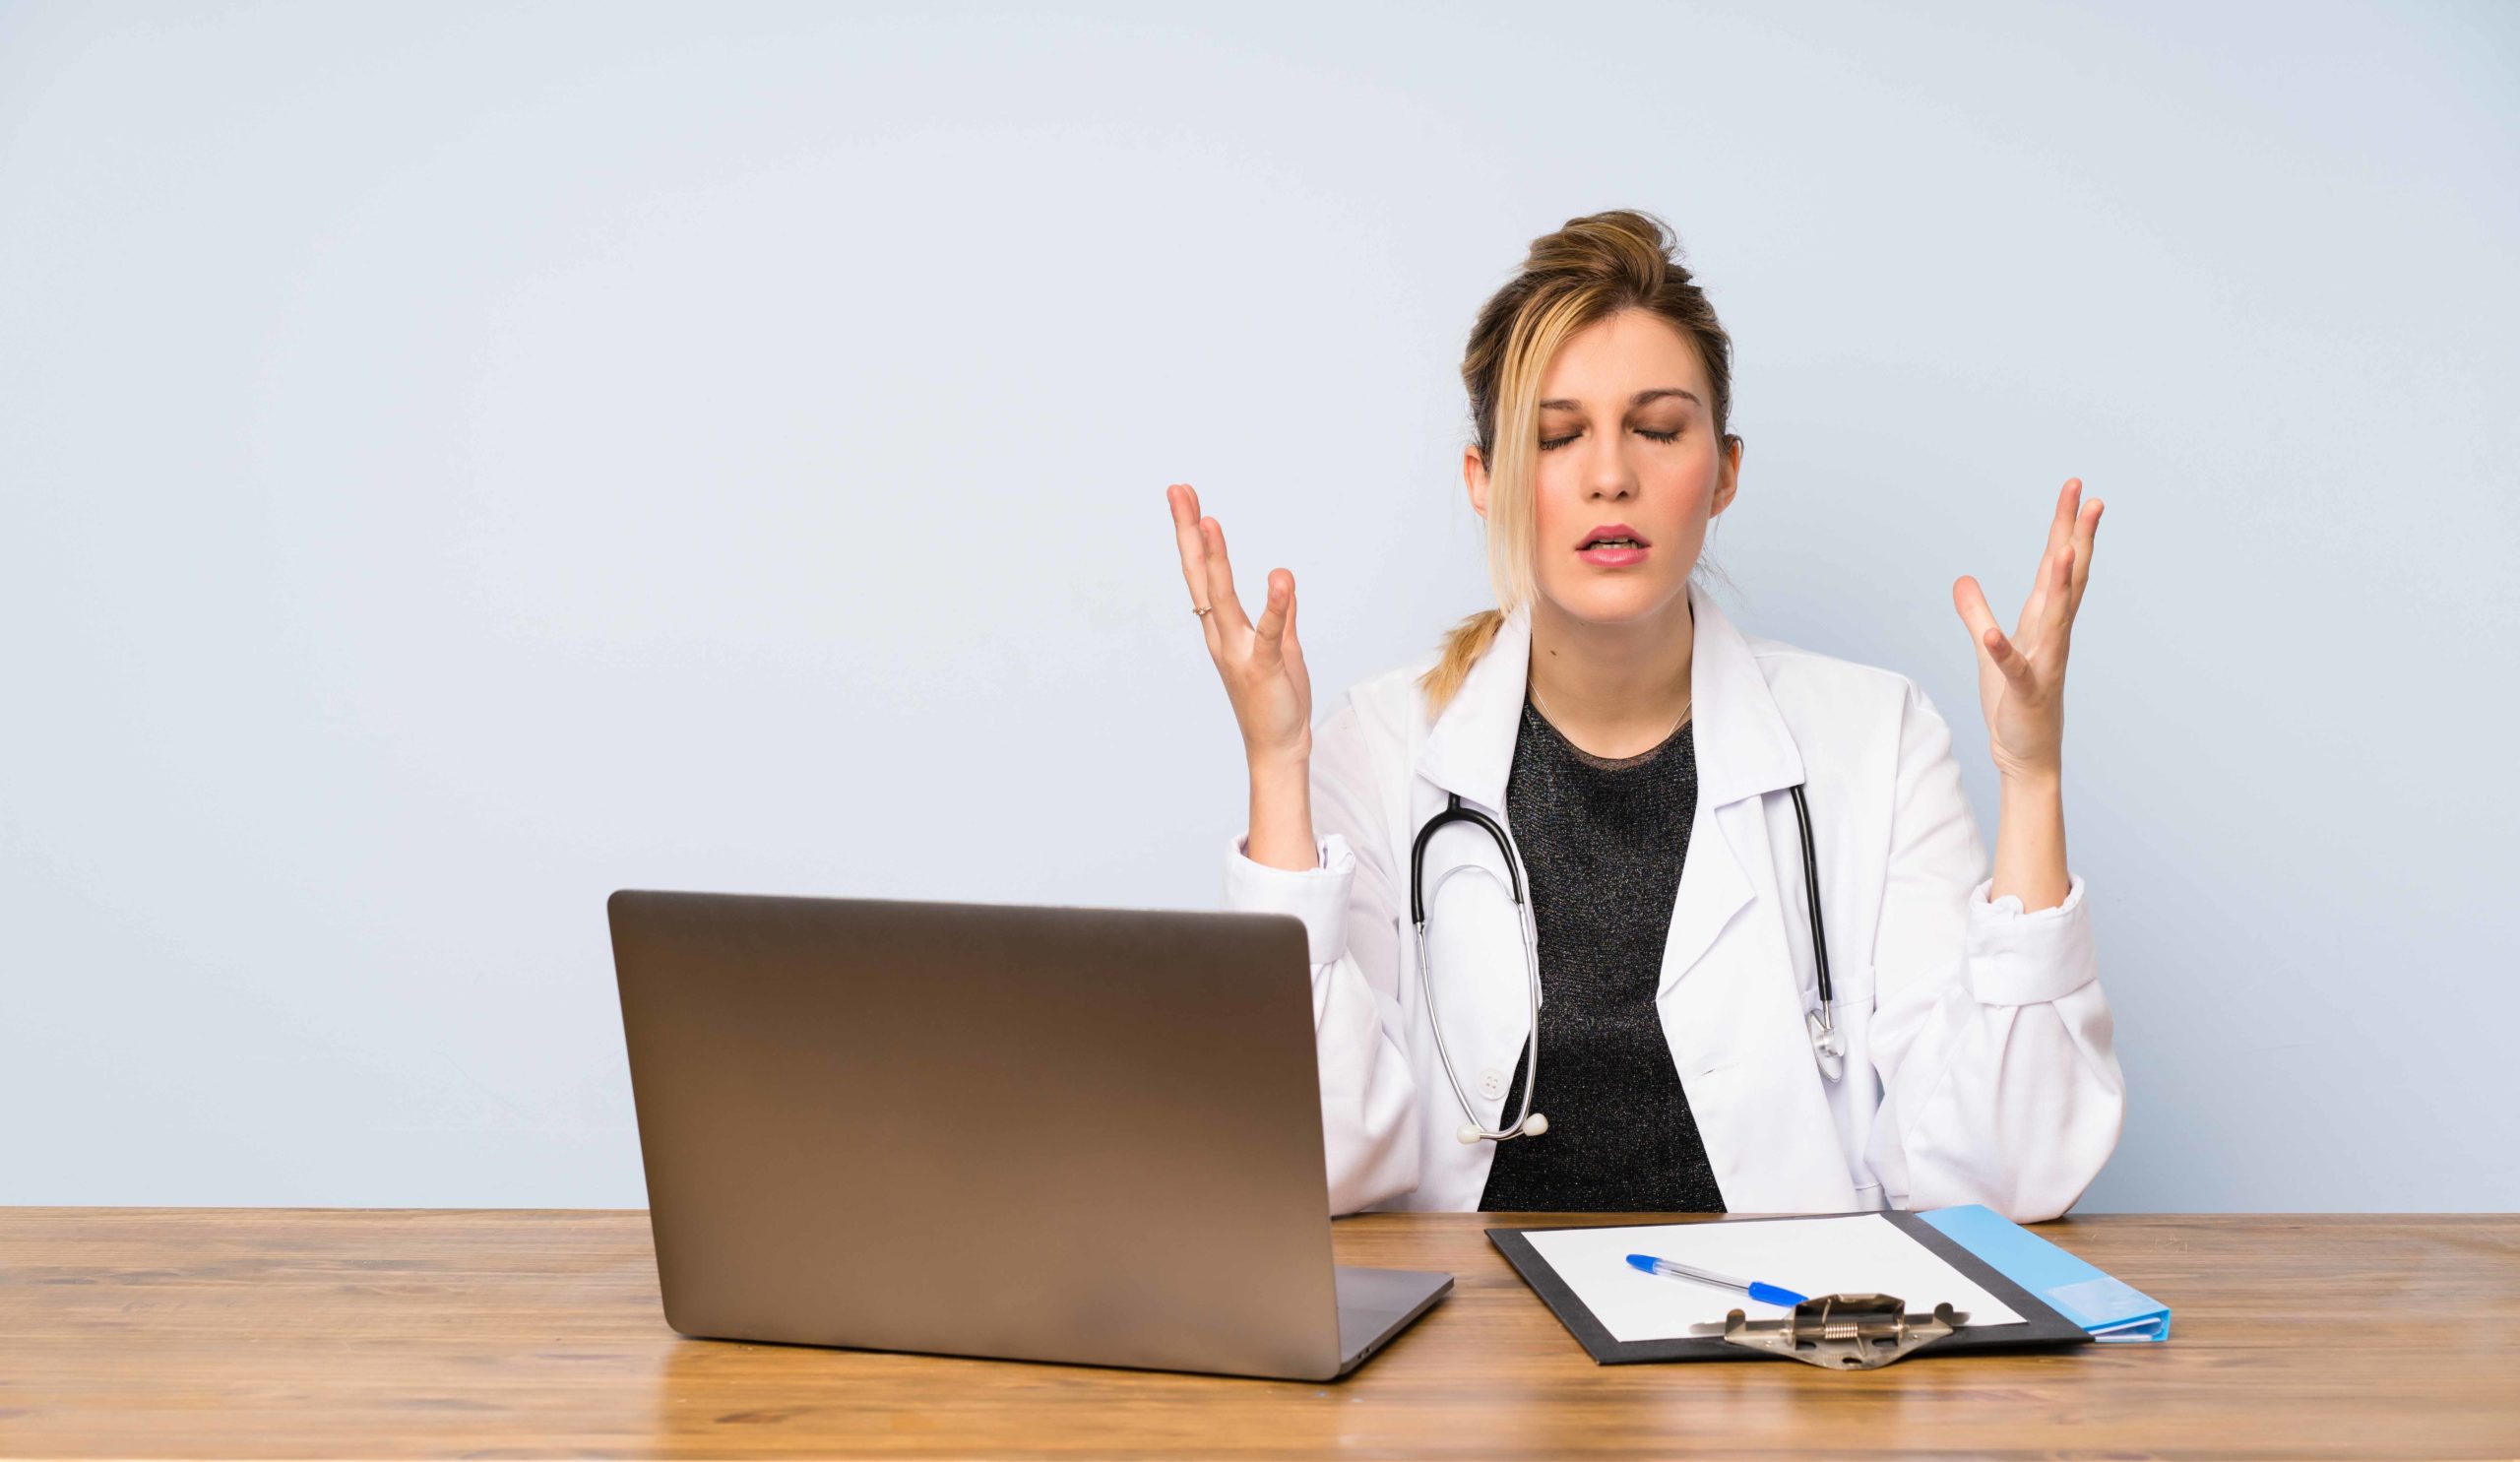 ノートPCとバインダーが置かれた机の前で、両手を挙げて険しい表情をしている女性医師